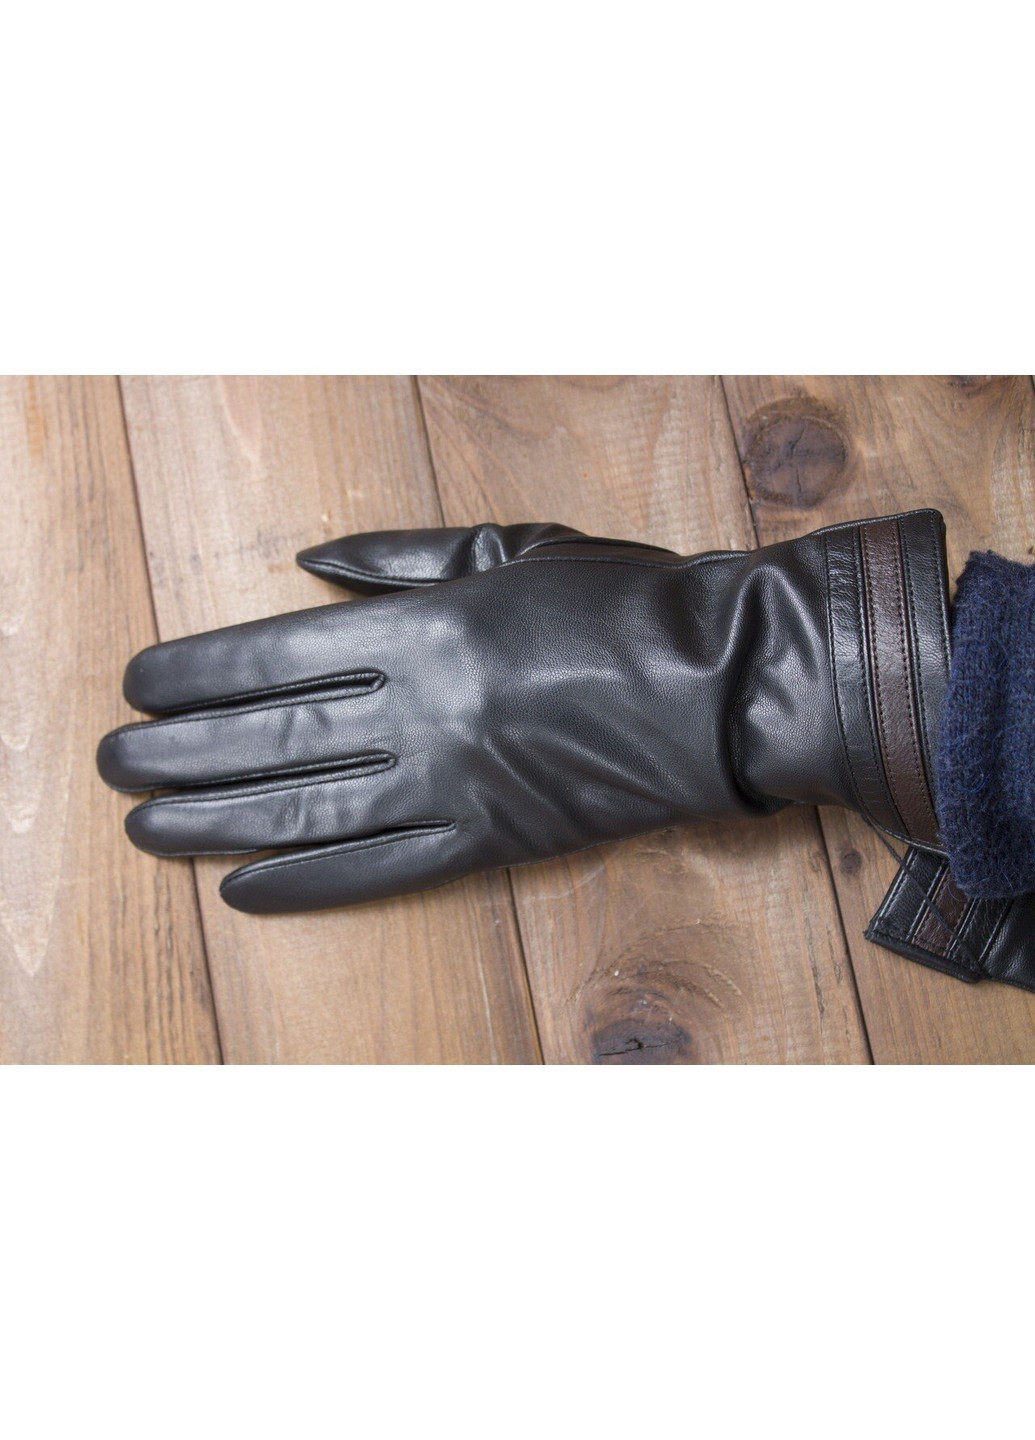 Жіночі сенсорні шкіряні рукавички 946s1 Shust Gloves (266143780)